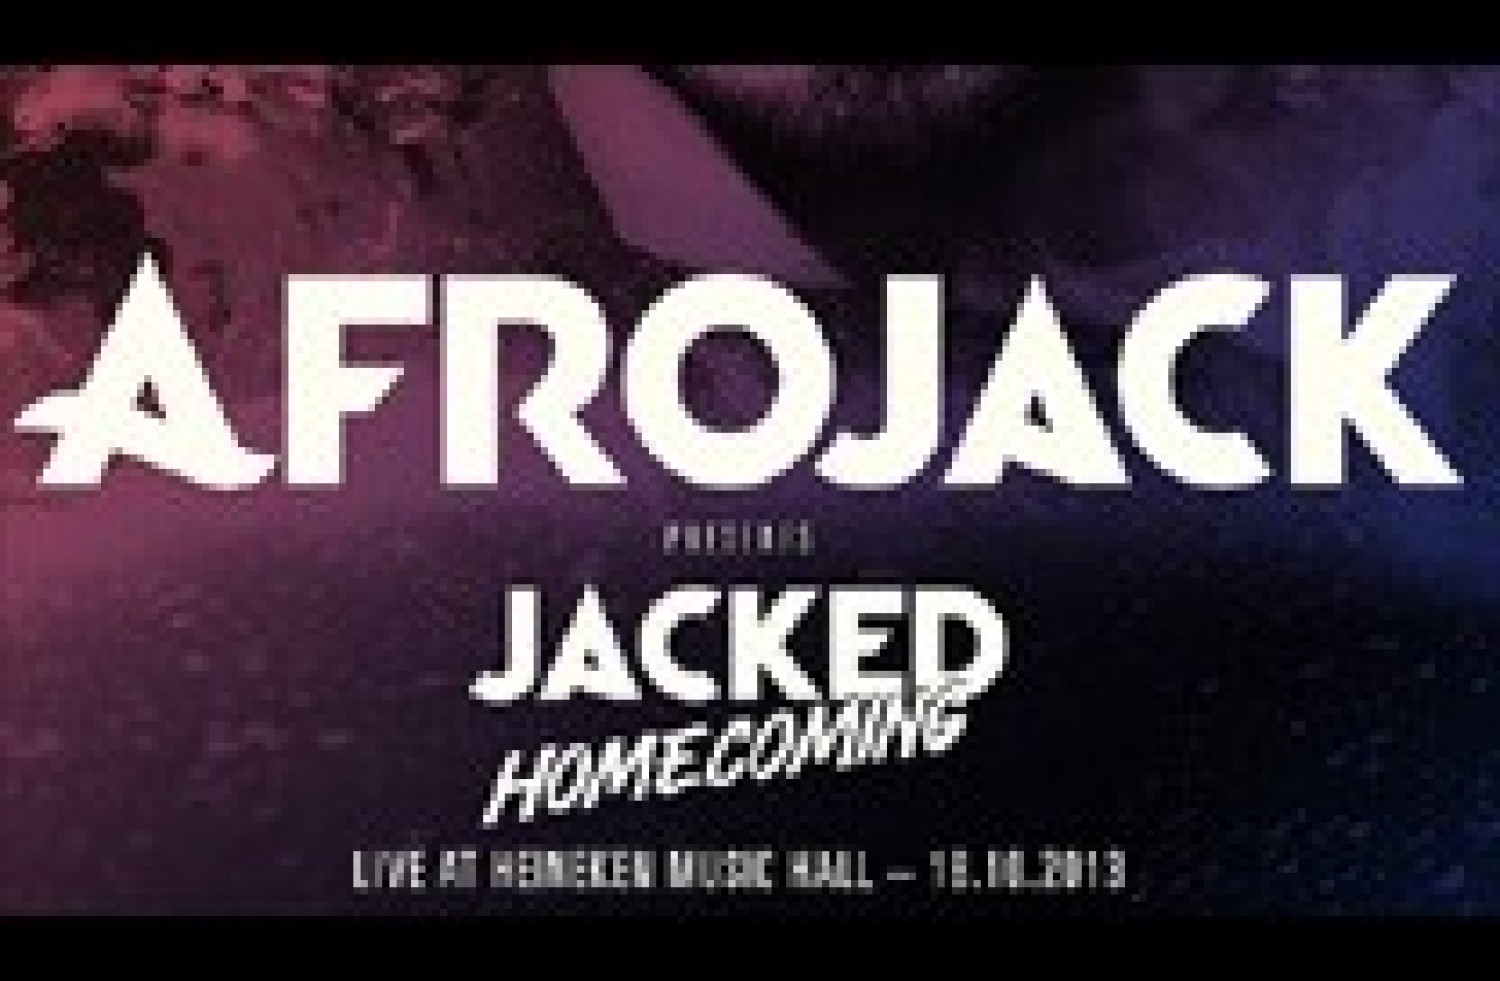 Party nieuws: Afrojack tijdens ADE met Jacked in Heineken Music Hall